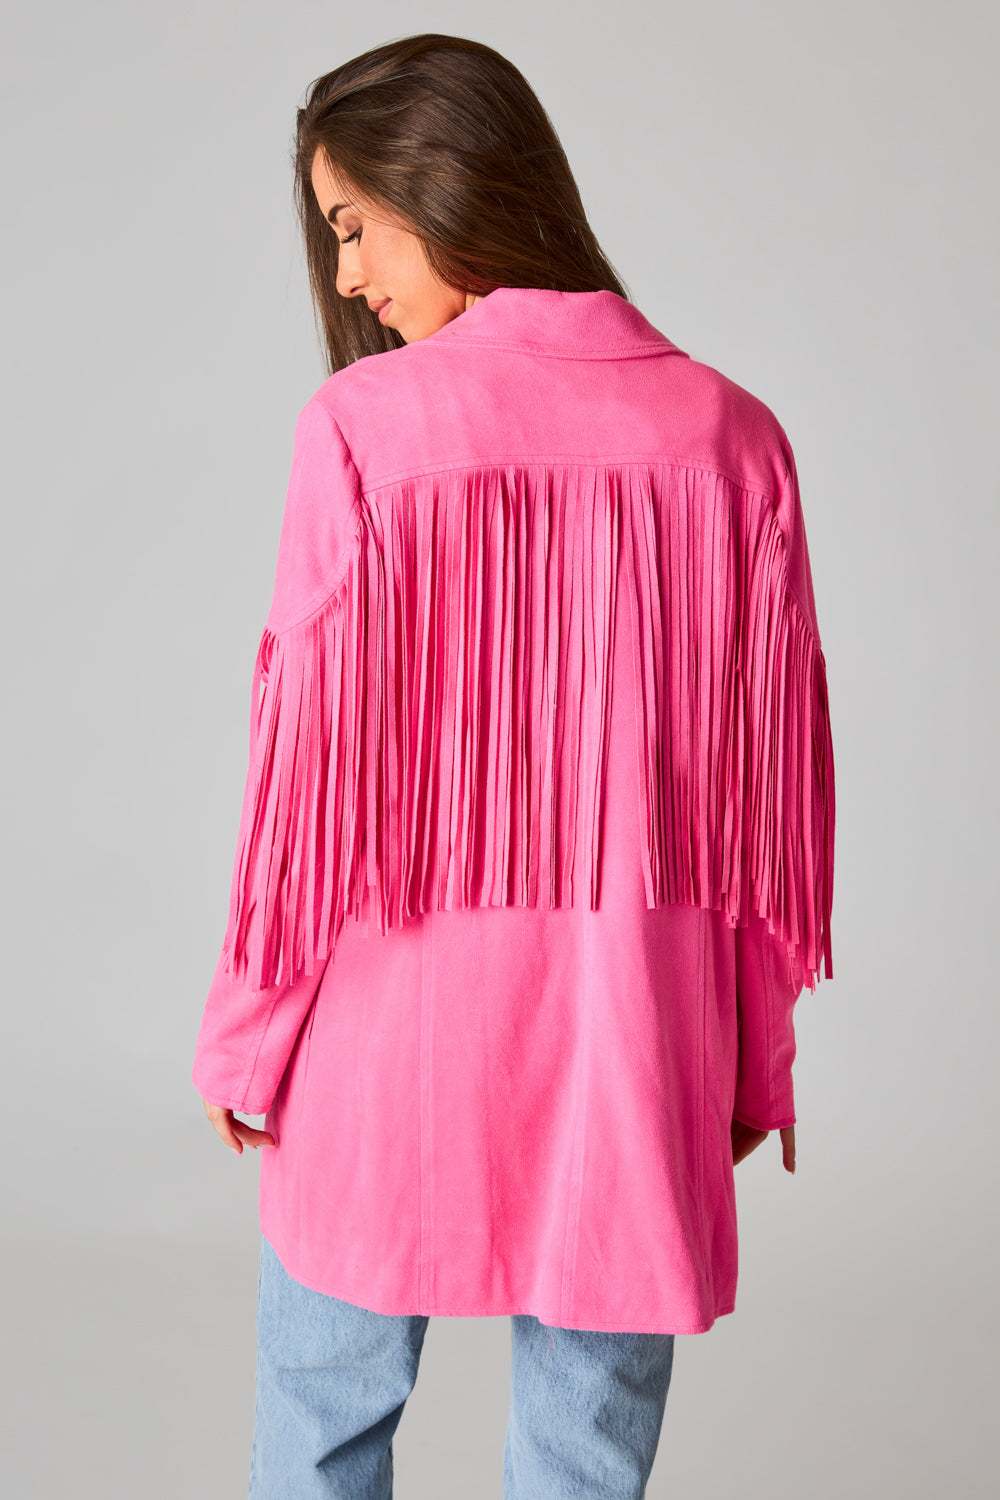 BuddyLove Skylar Fringe Faux Fur Jacket - Hot Pink XL Solids